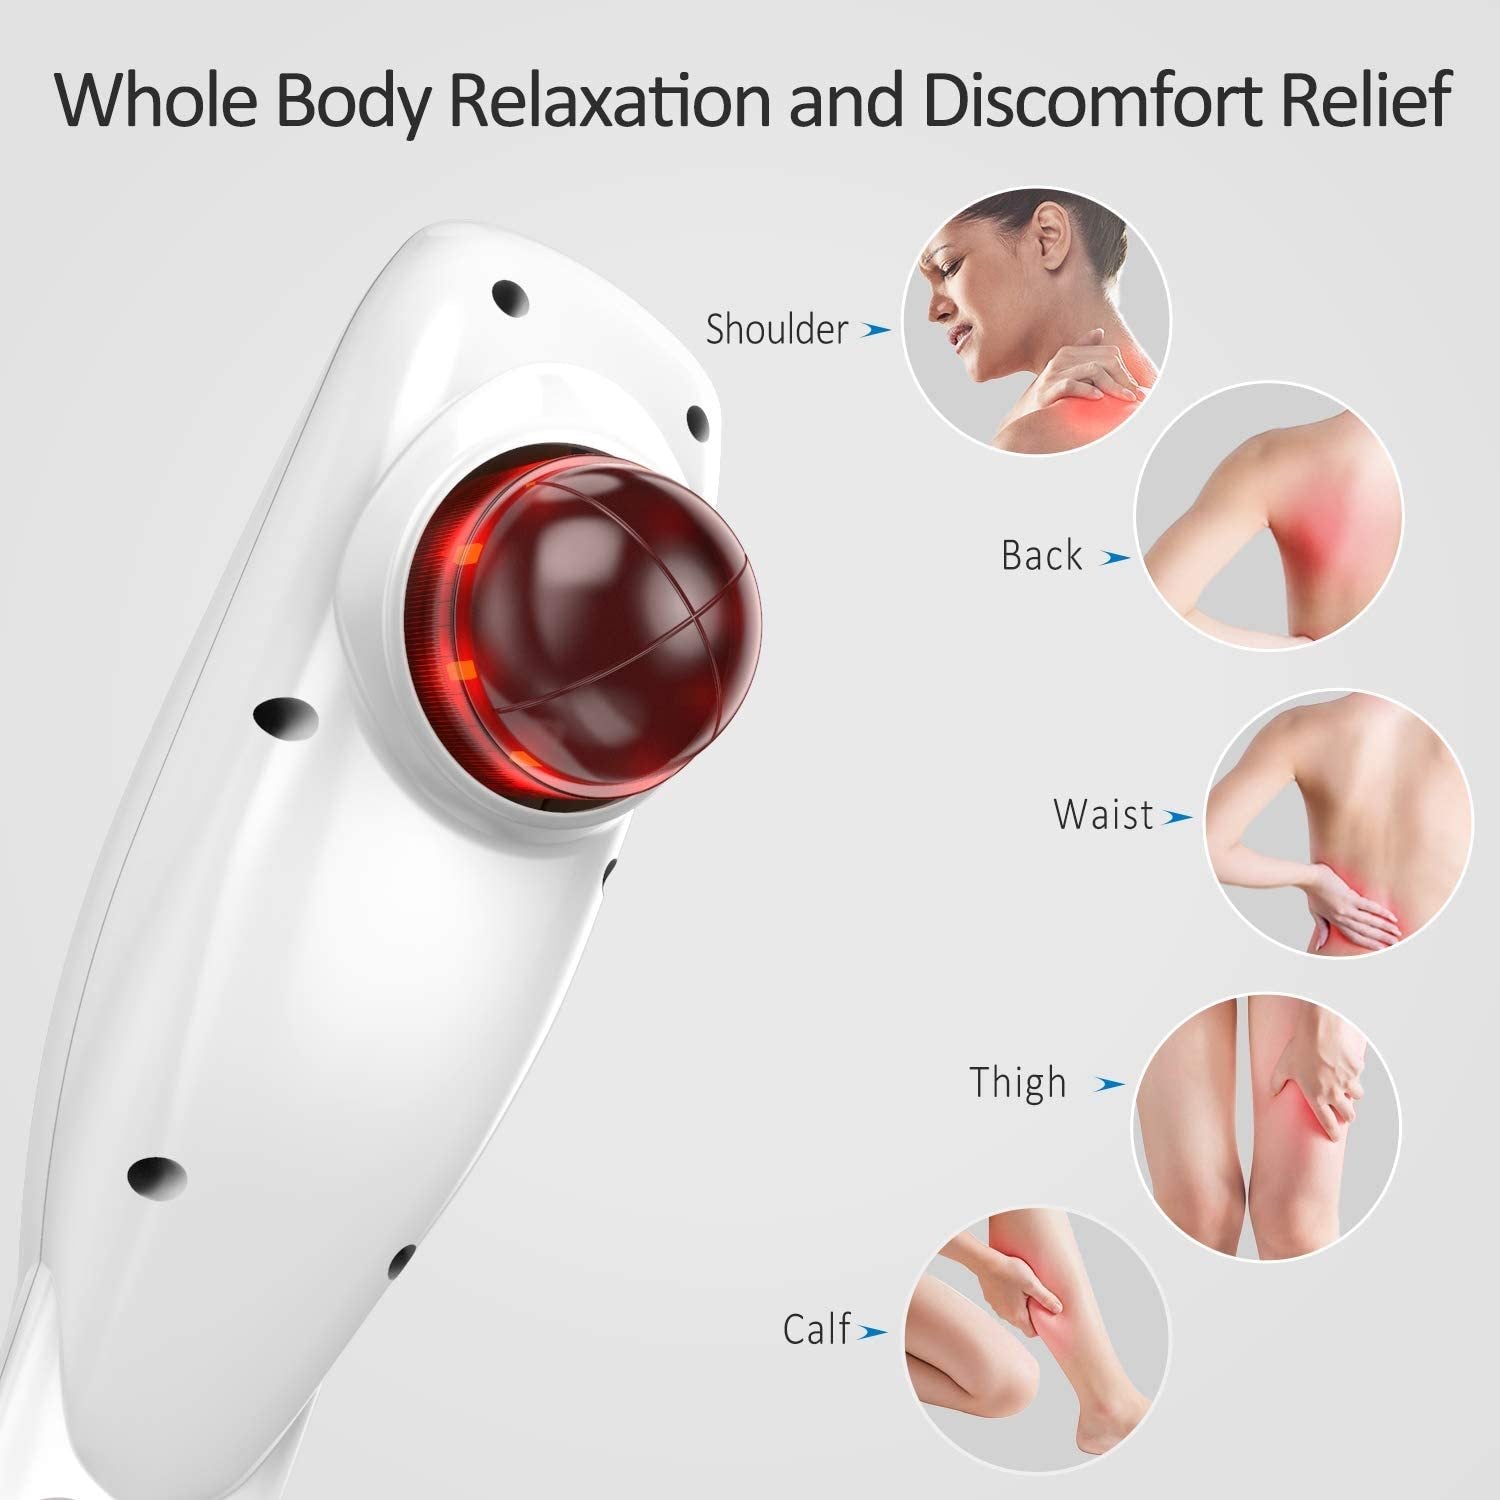 RENPHO Handheld Massager For Muscles, Back, Foot, Neck, Shoulder